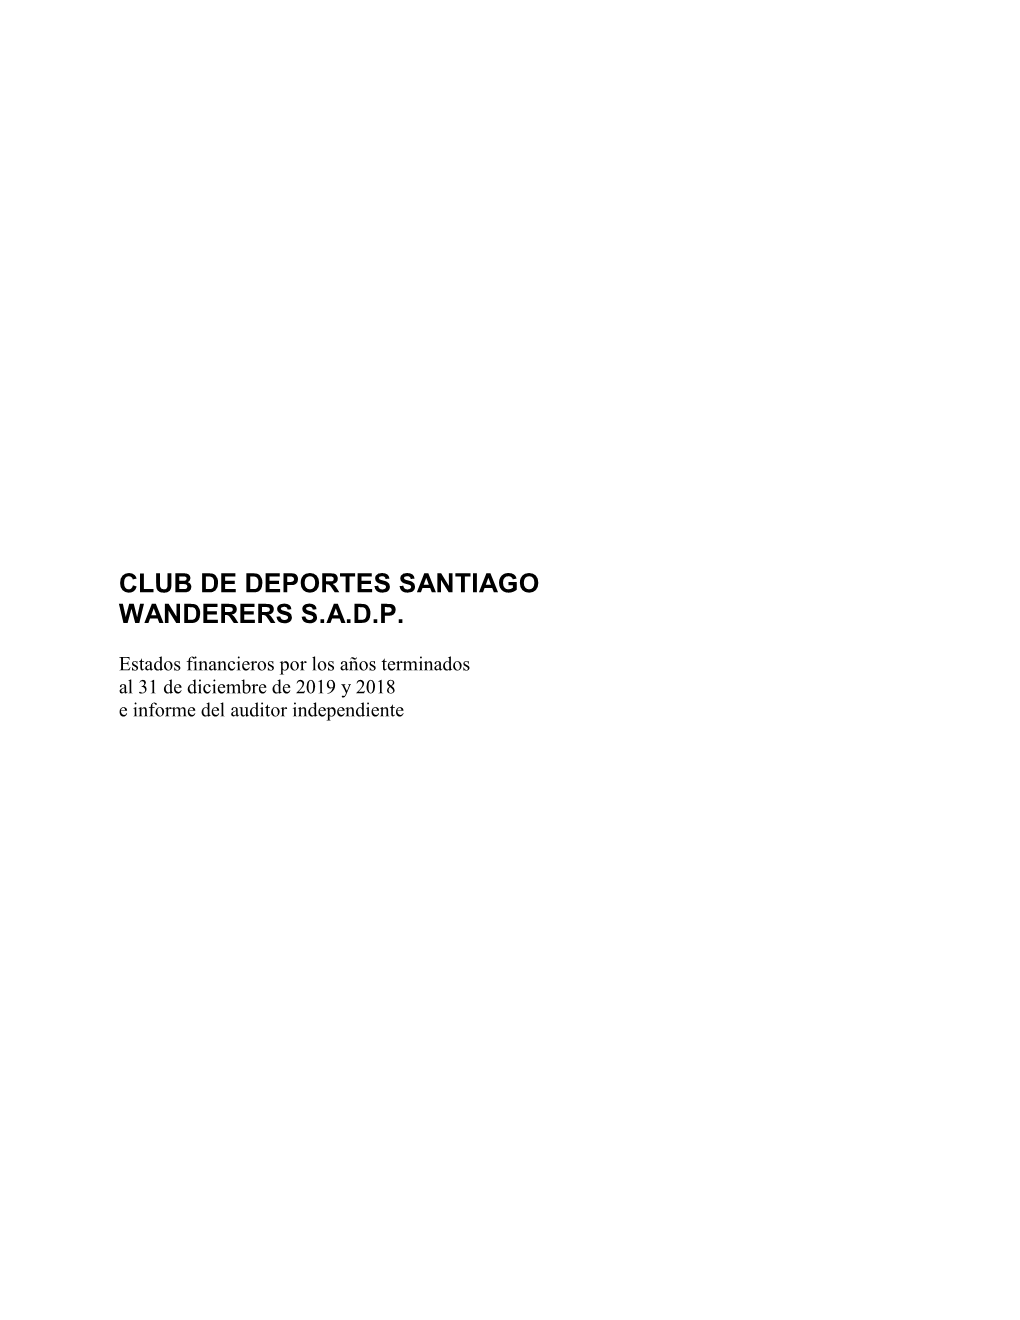 Club De Deportes Santiago Wanderers S.A.D.P